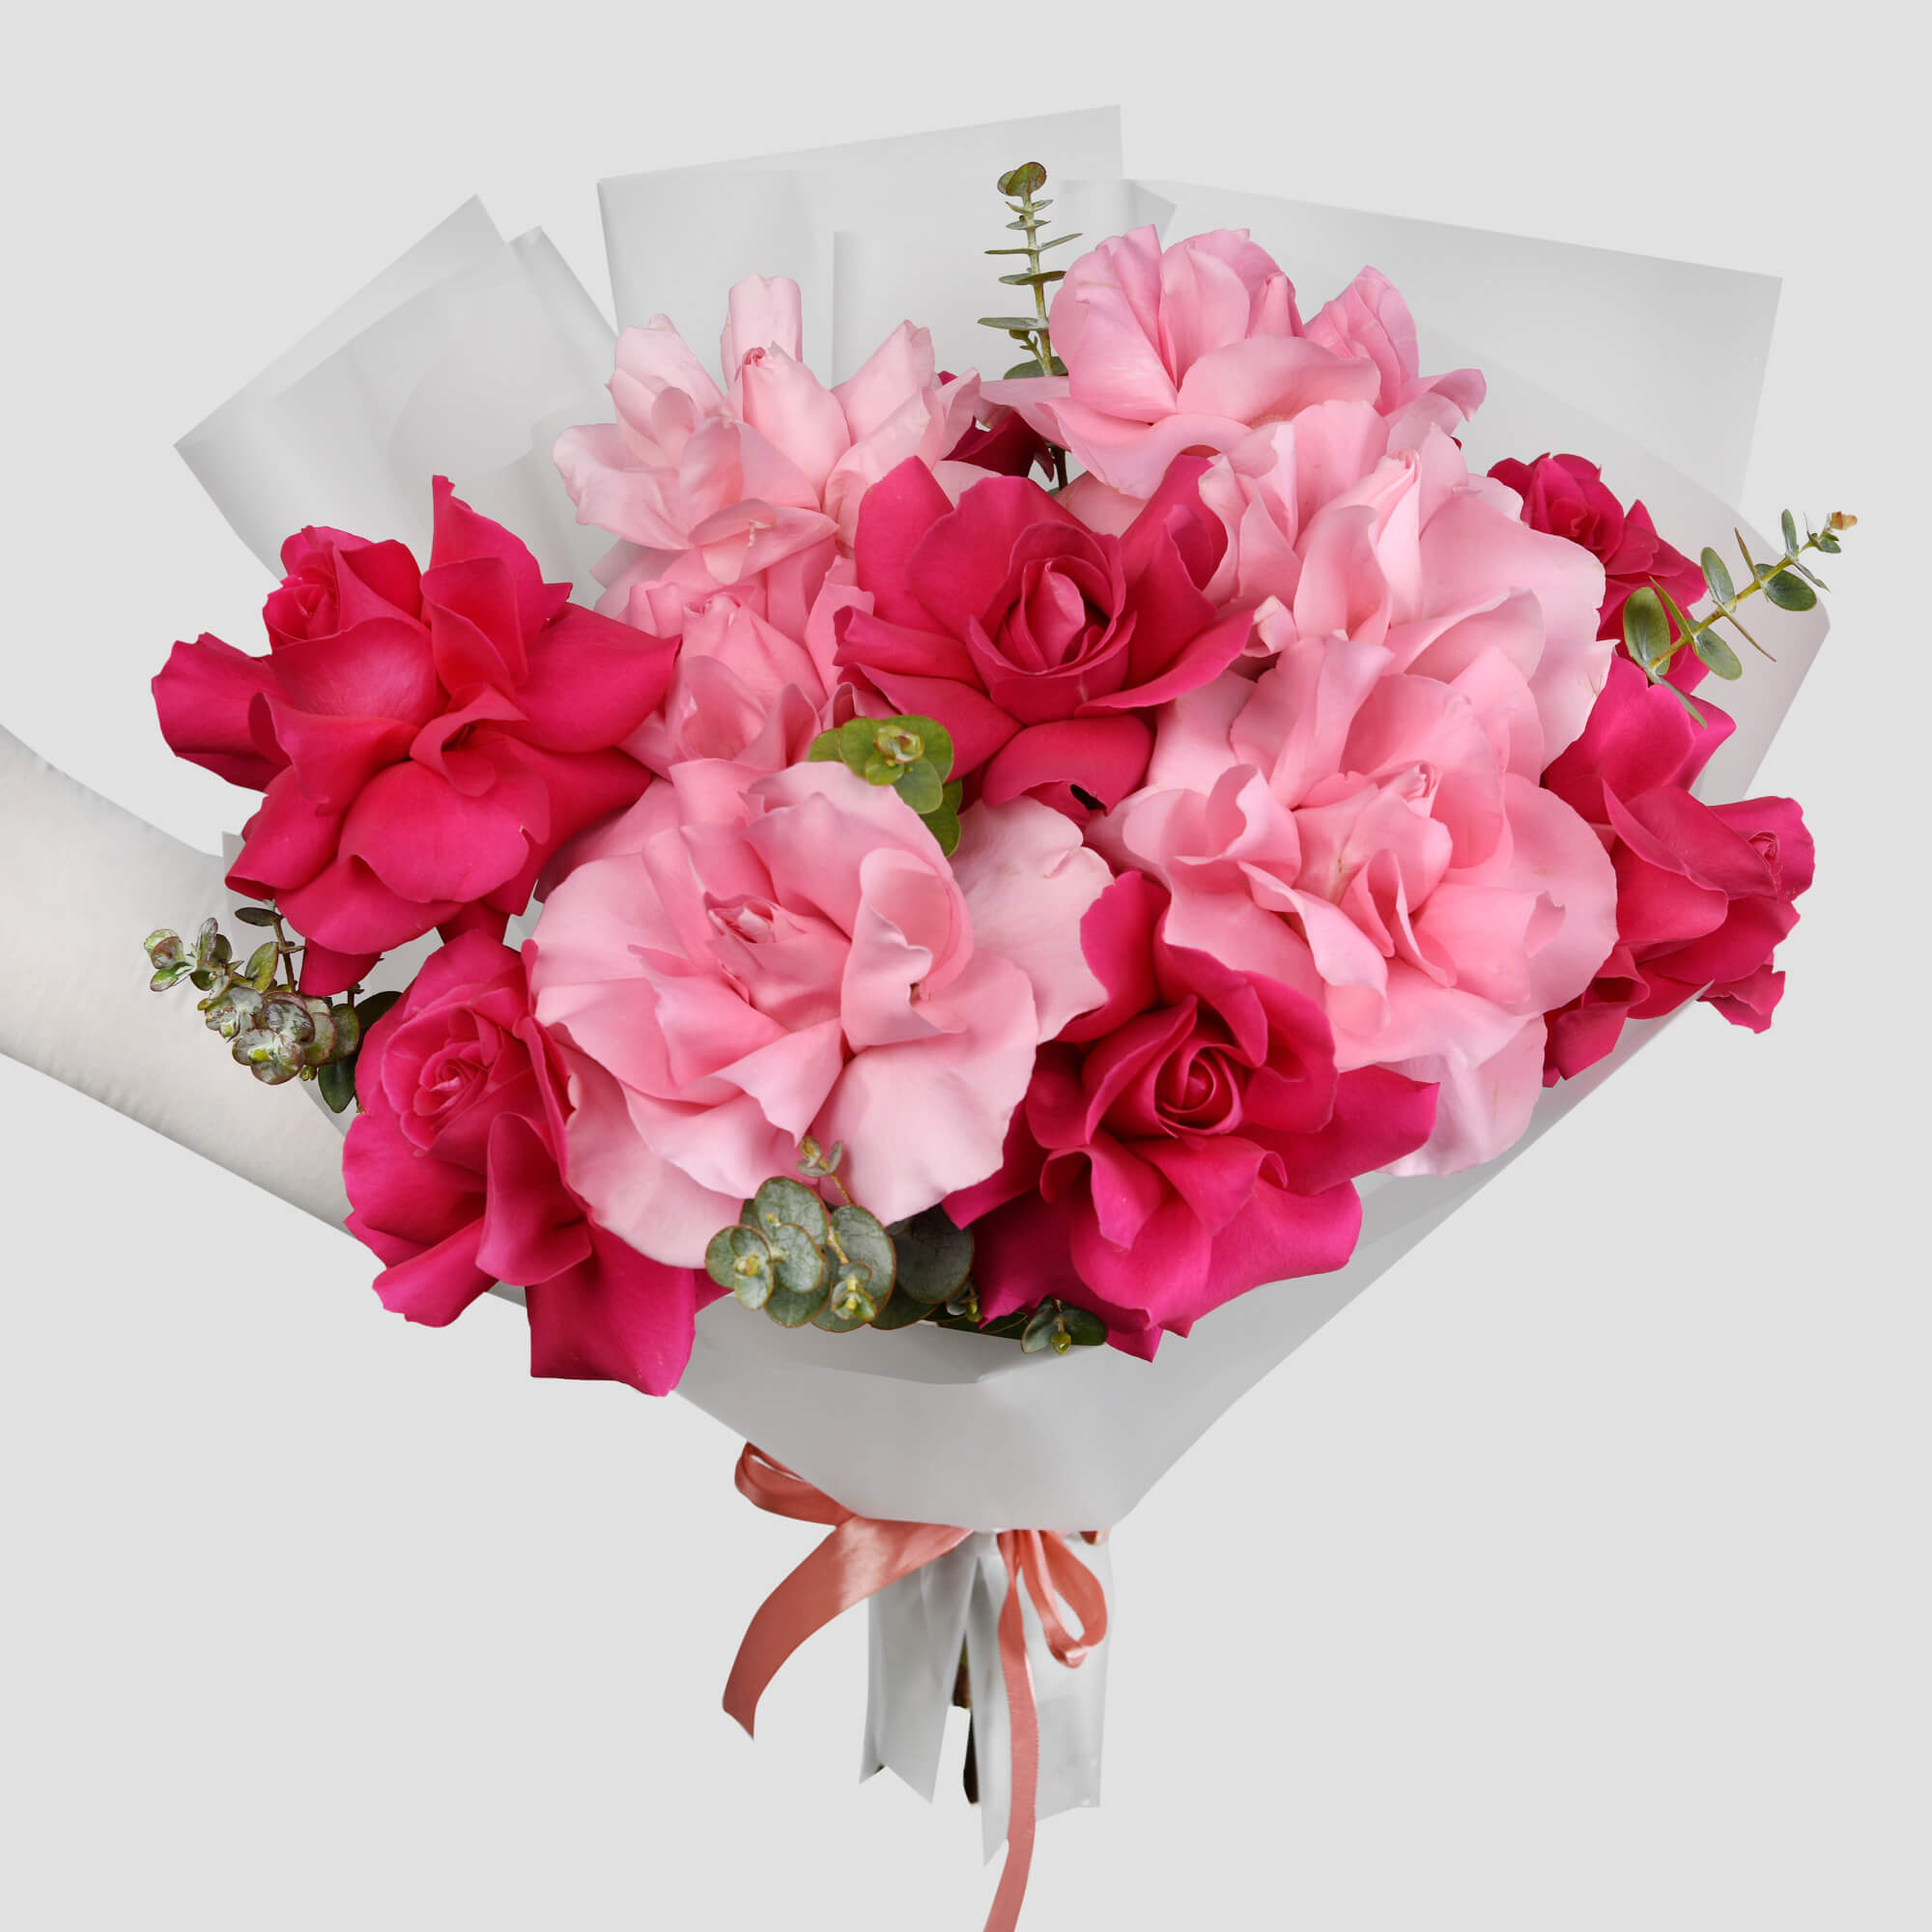 Buchet cu trandafiri speciali roz multicolori